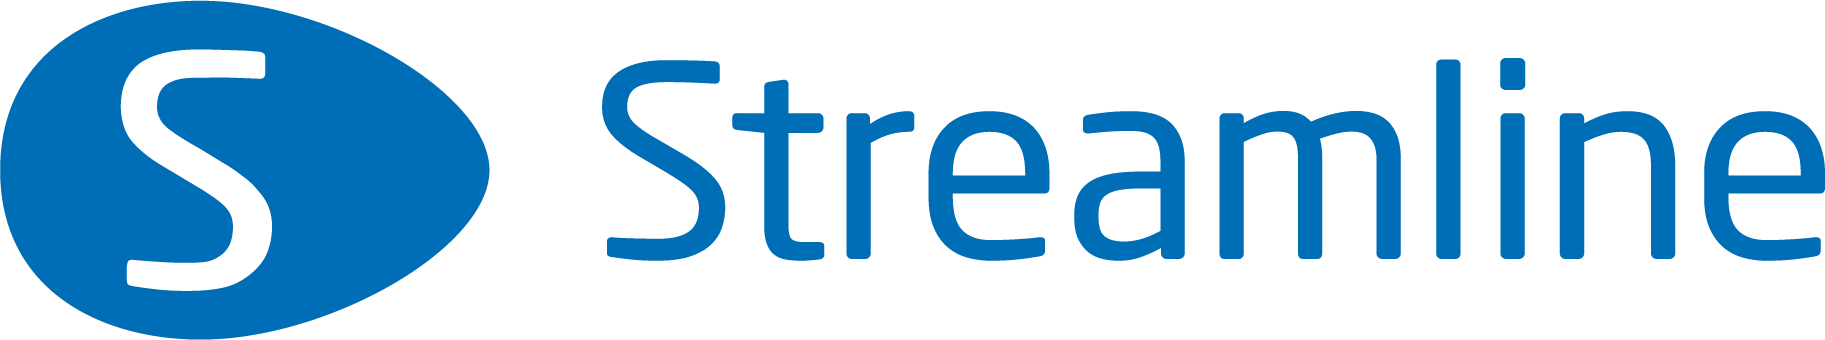 Streamline logo azul